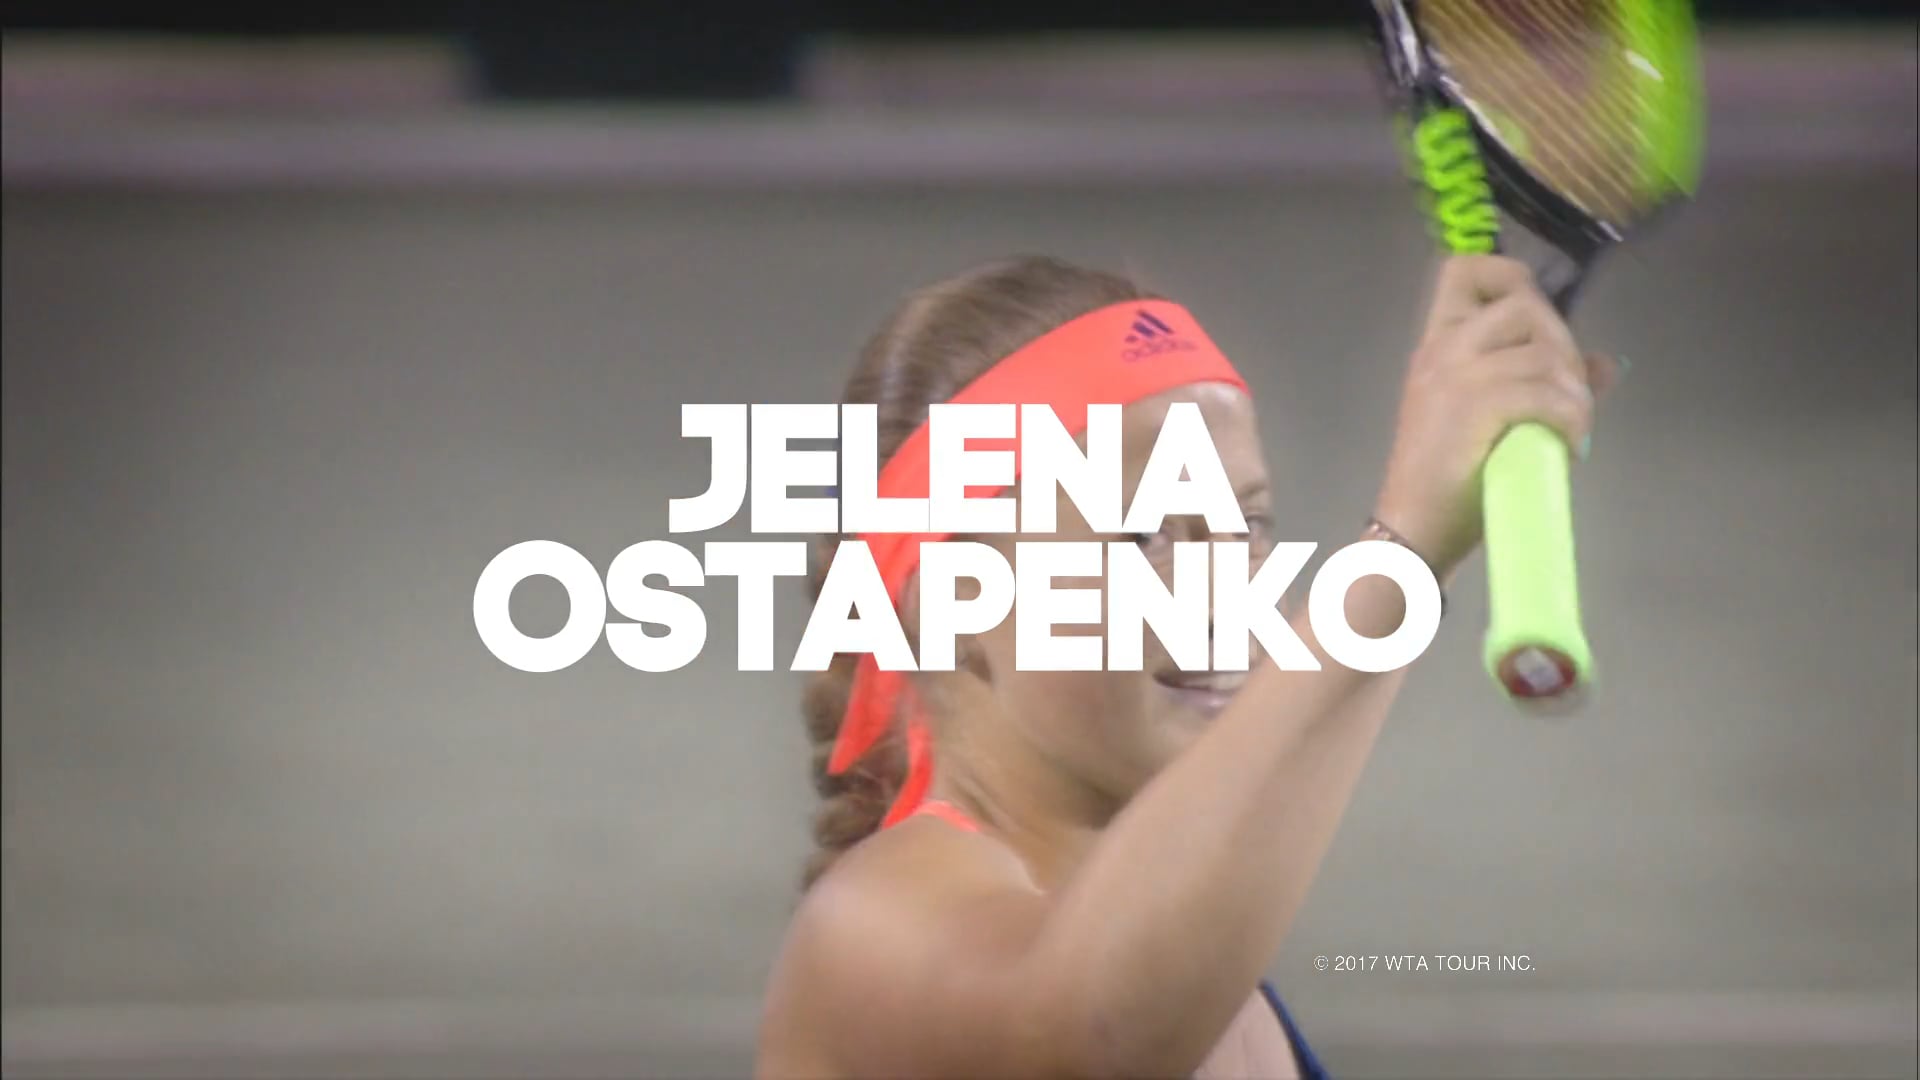 Jelena Ostapenko